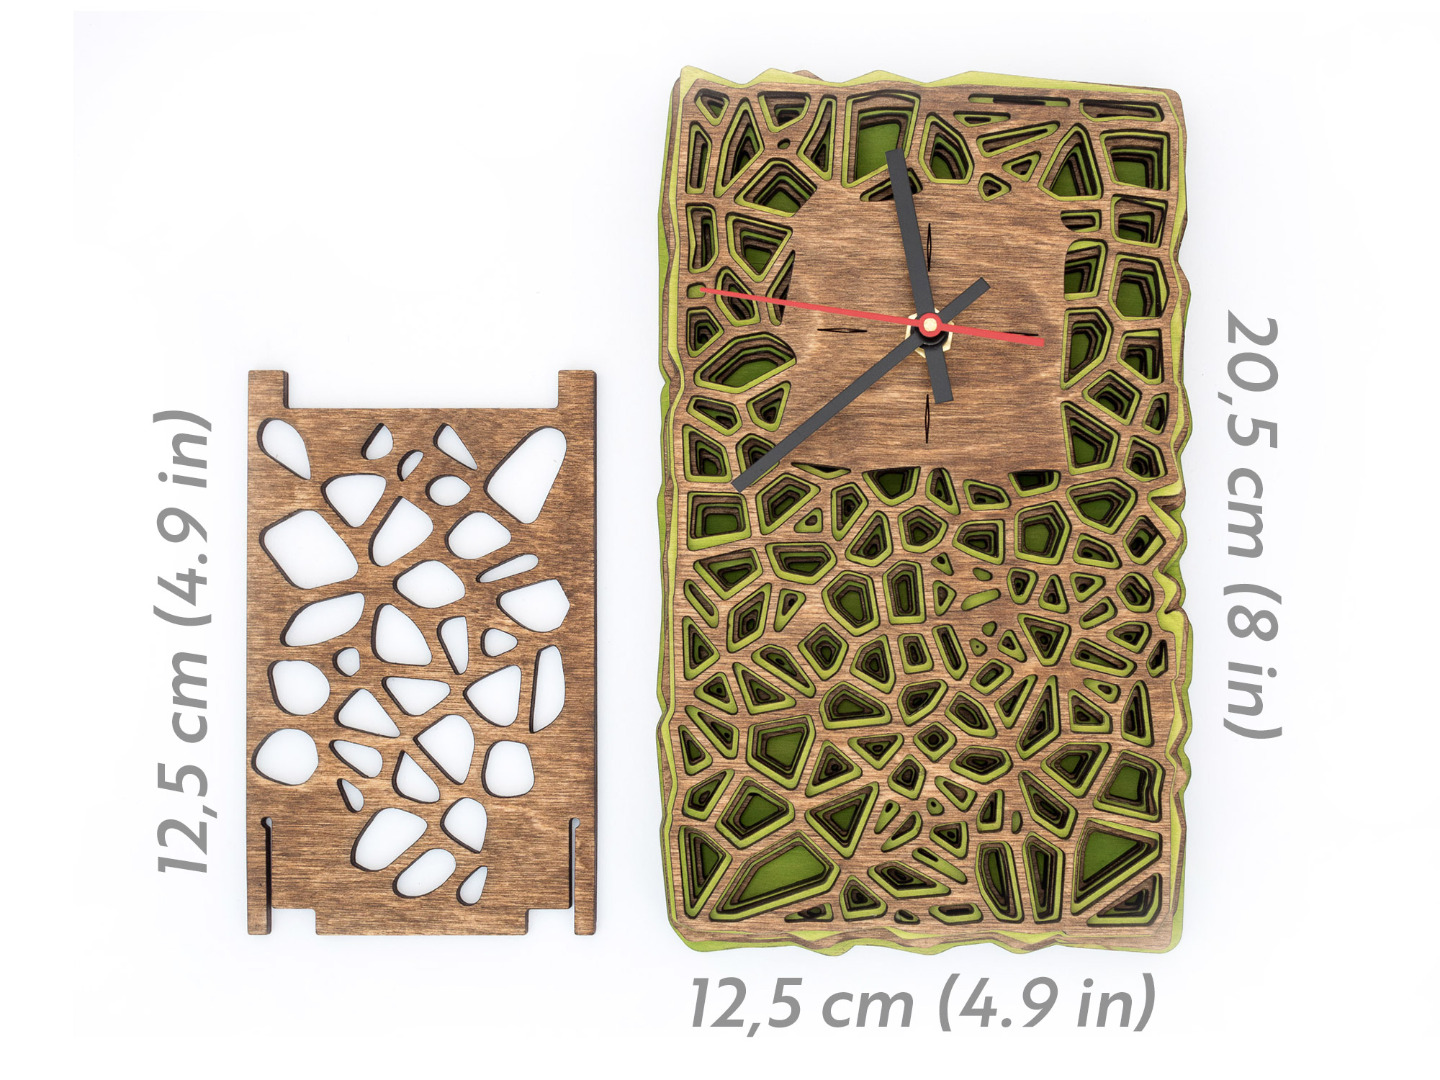 Uhr aus Holz für Schreibtisch oder Wand - Organisches Zweifarbiges Design in Walnuss und Maigrün 12